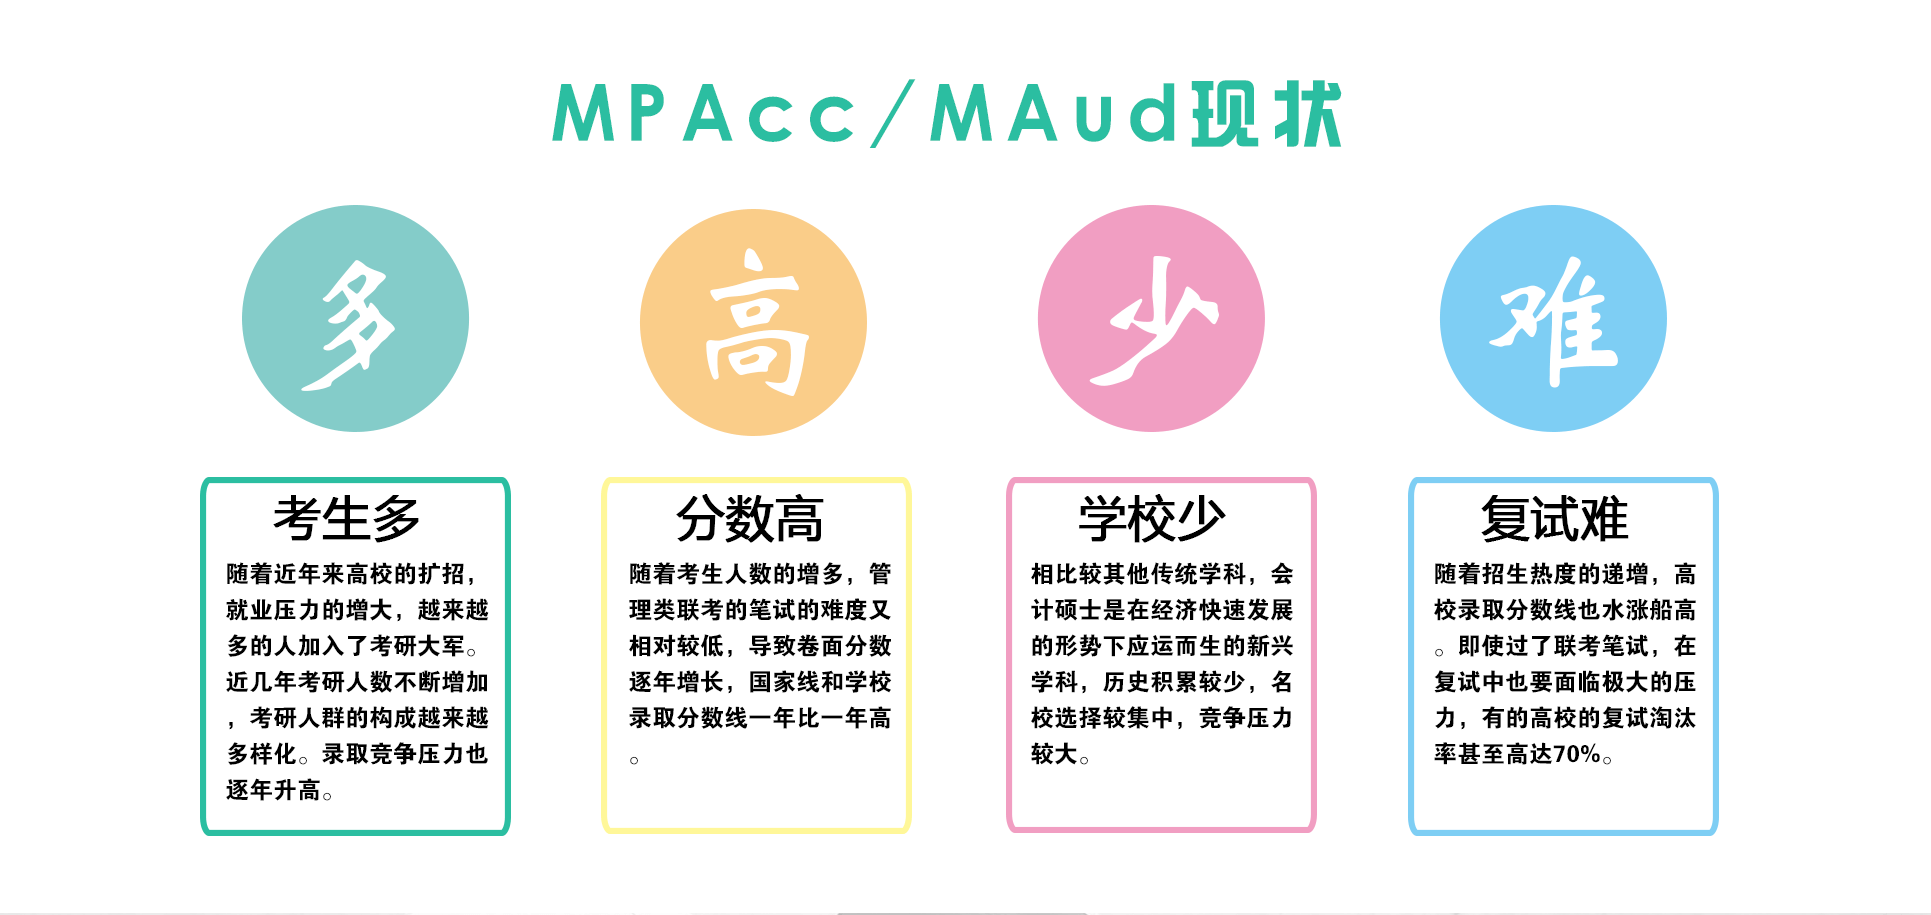 杭州太奇MPAcc/MAud暑期集训营